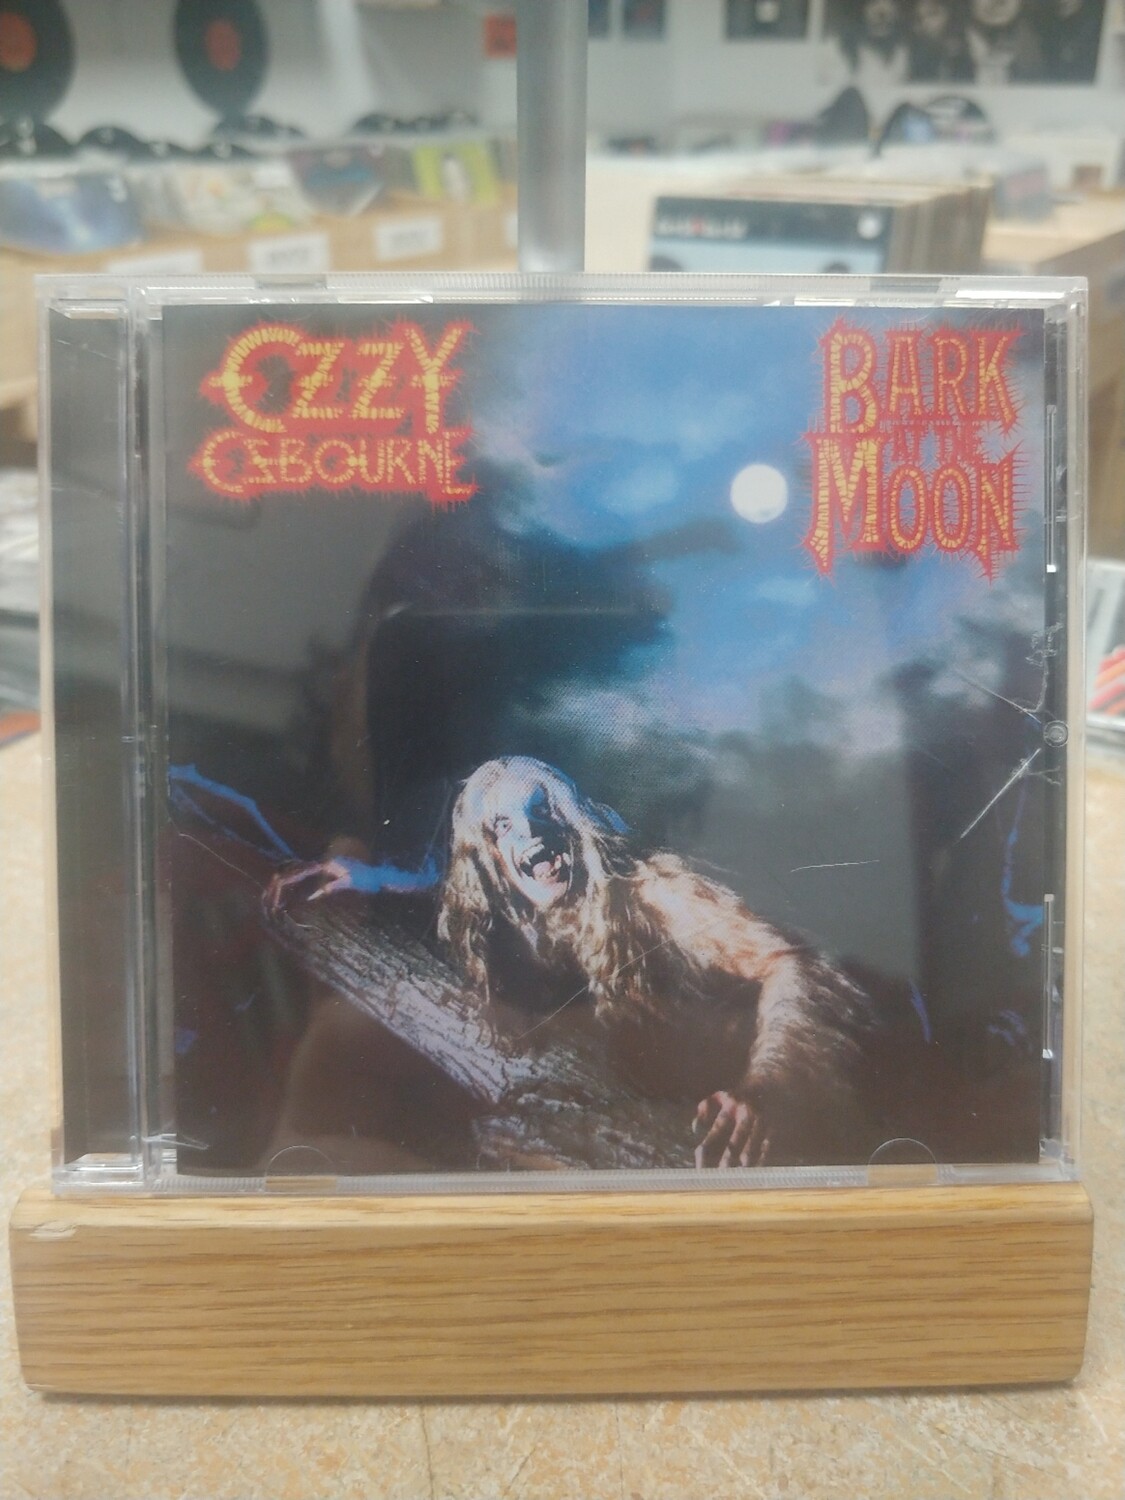 Ozzy Osbourne - Bark at the moon (CD)